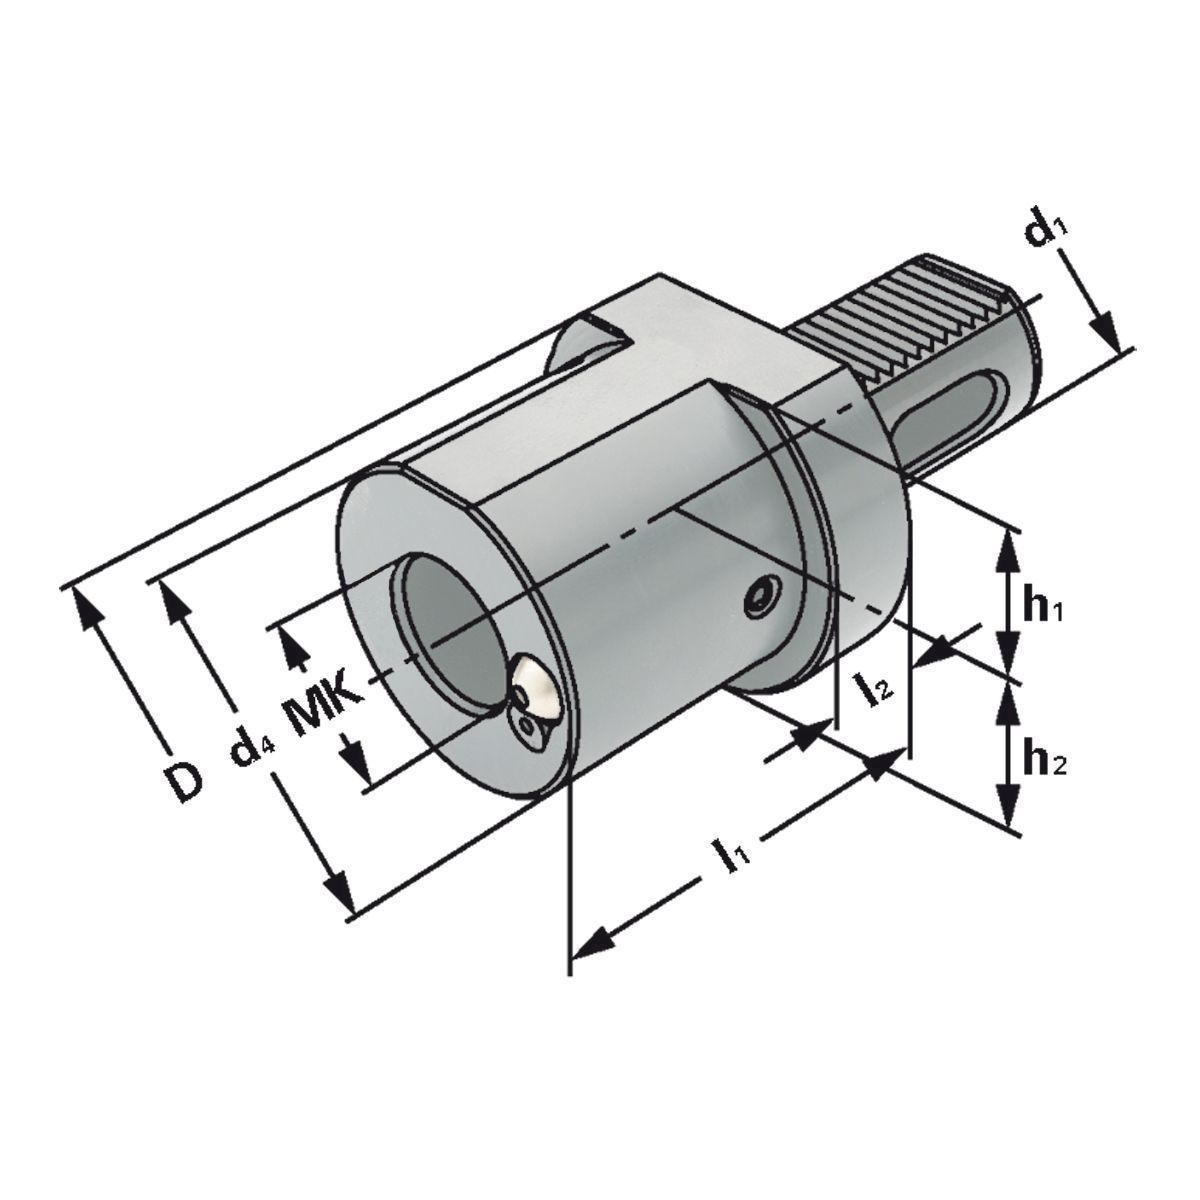 MK-Bohrerhalter F1-50xMK5 DIN 69880 (ISO 10889)